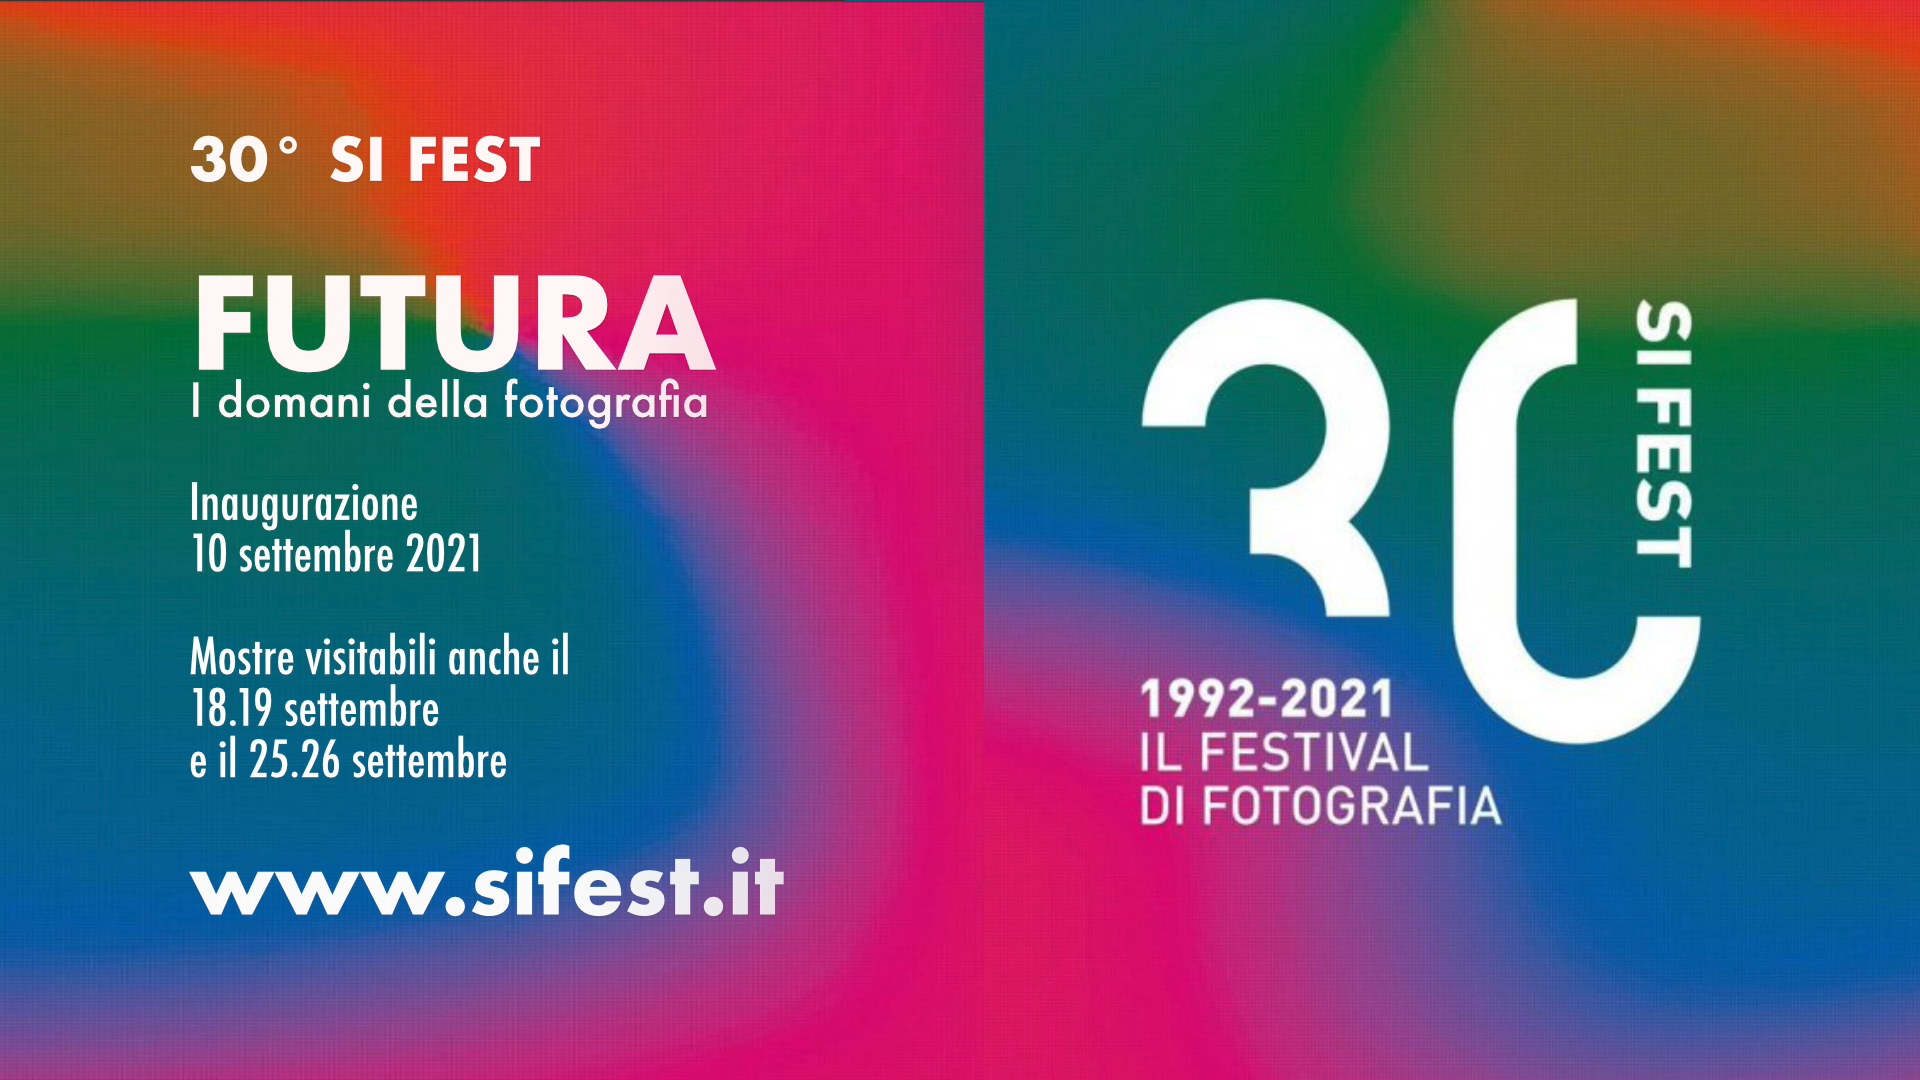 30^ SI FEST: i protagonisti della fotografia italiana e internazionale